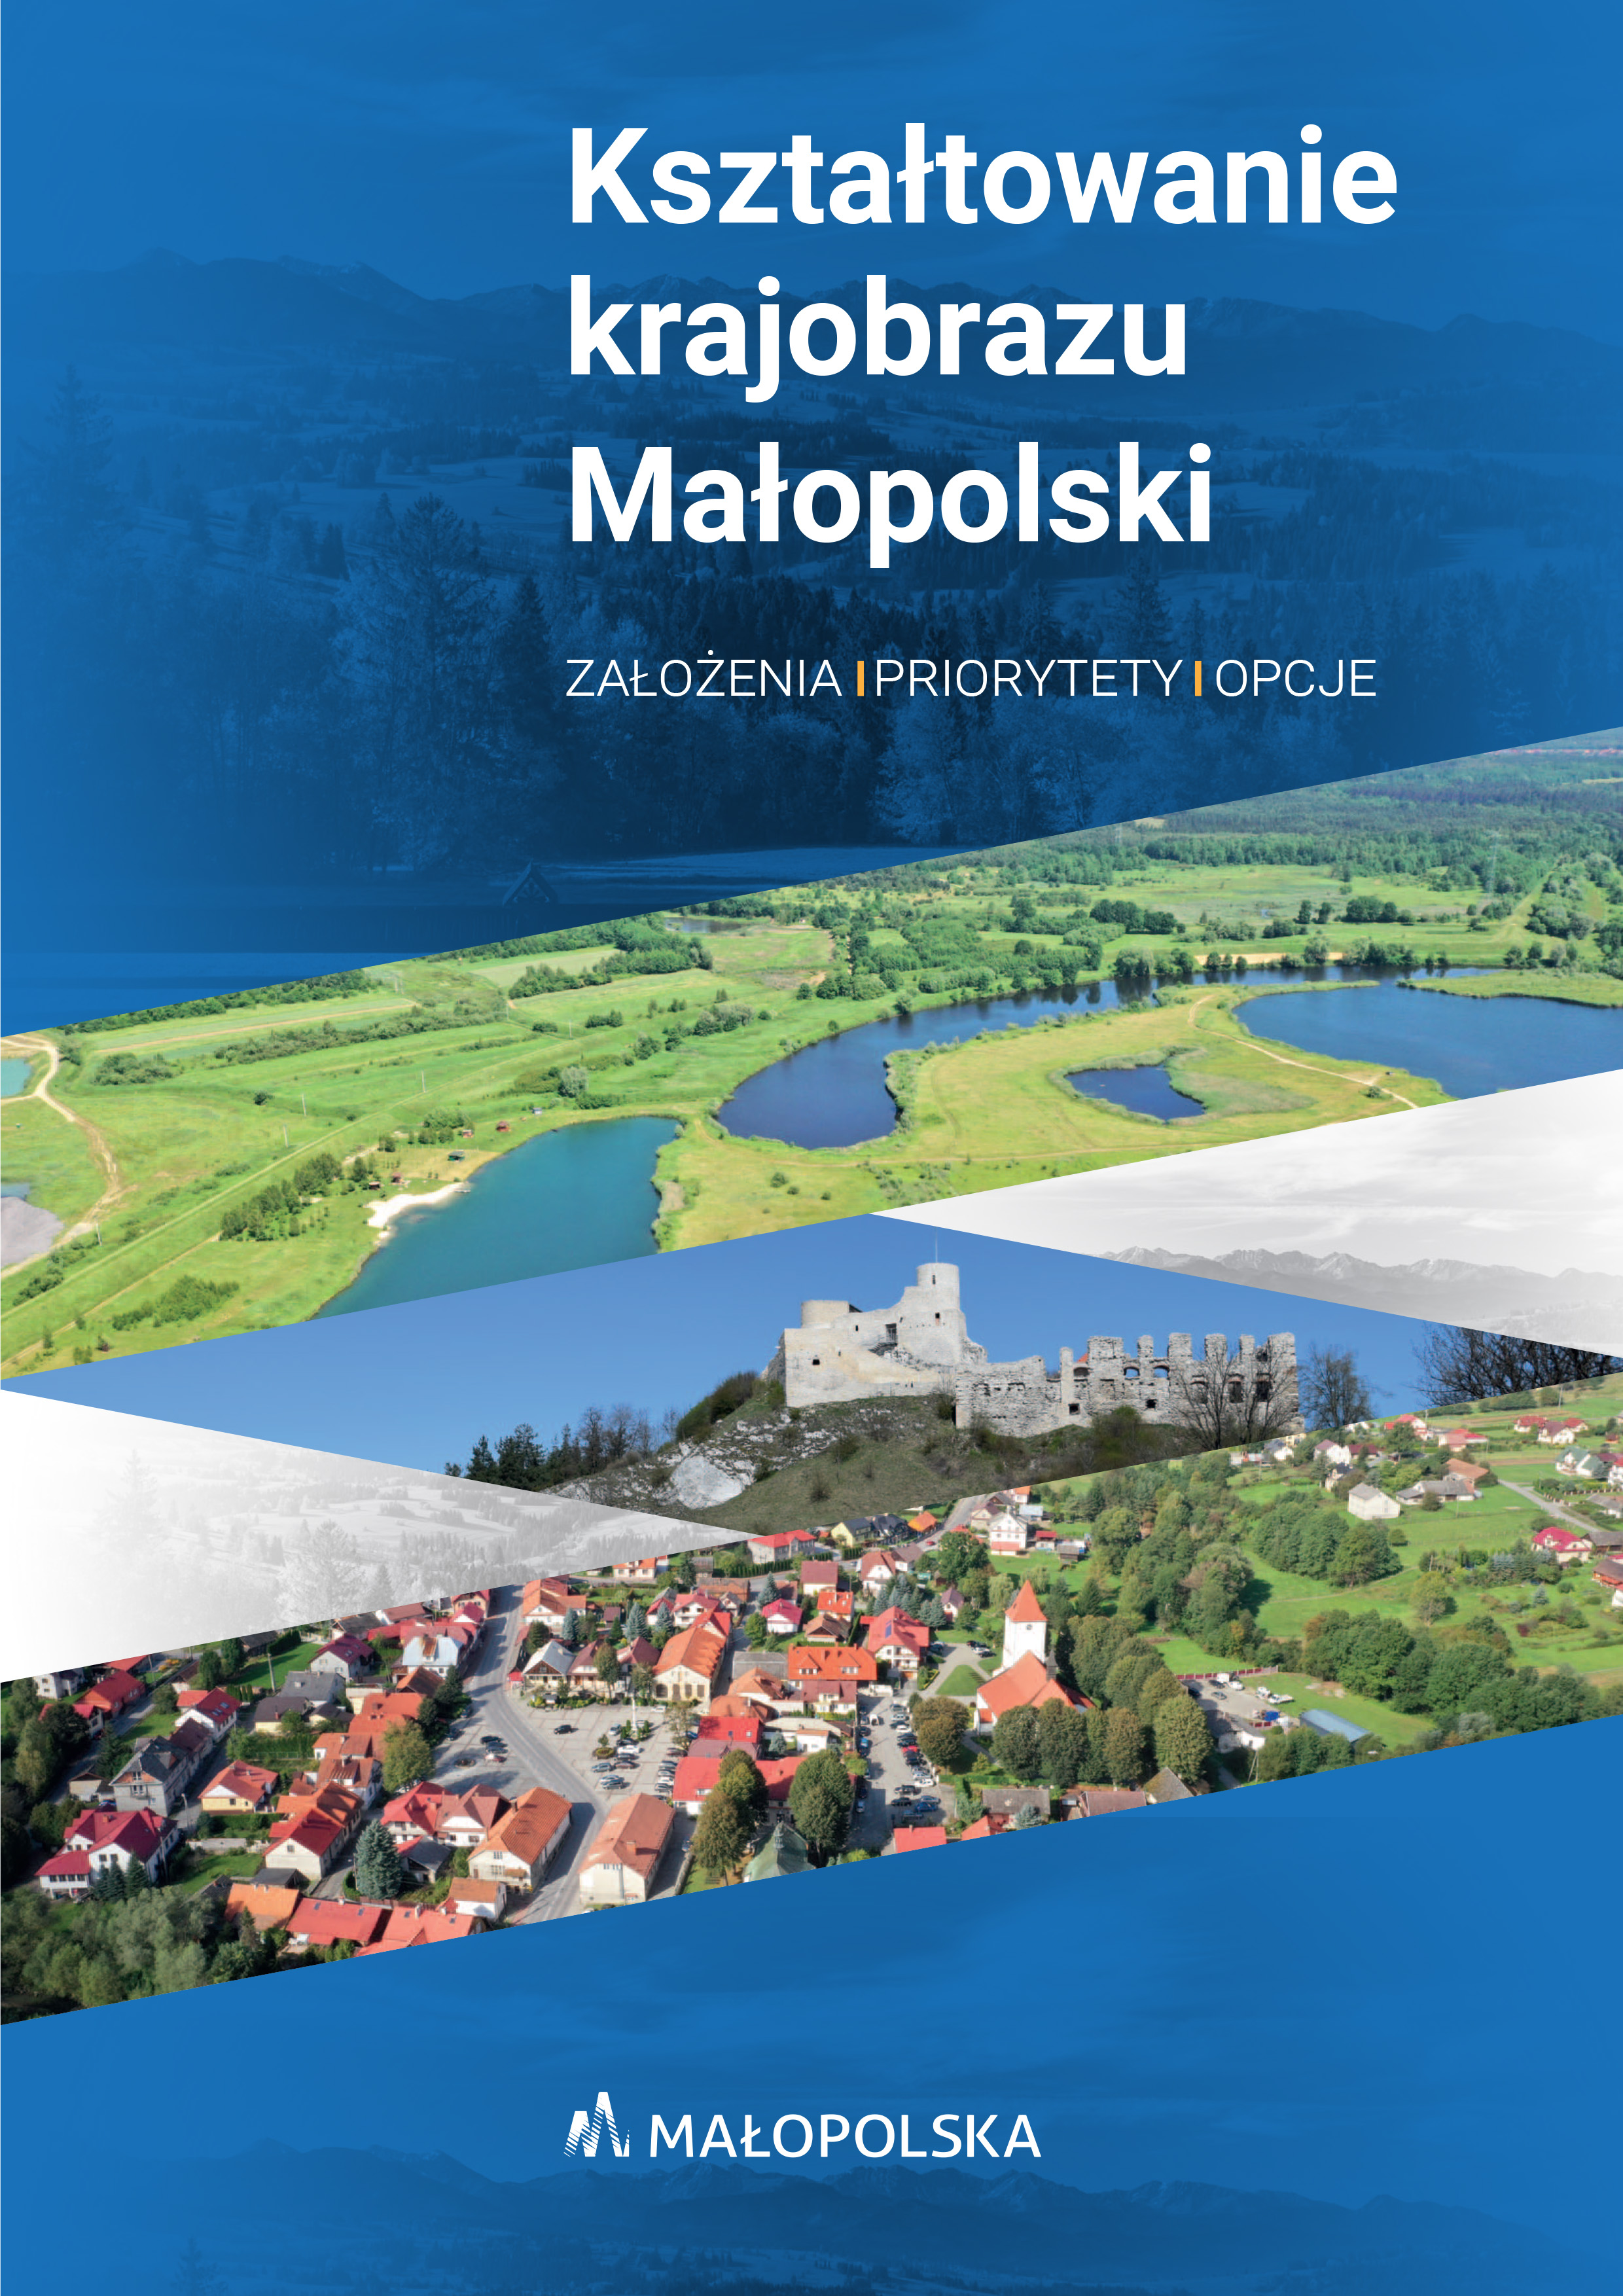 Okładka wydawnictwa Kształtowanie Małopolski krajobrazu